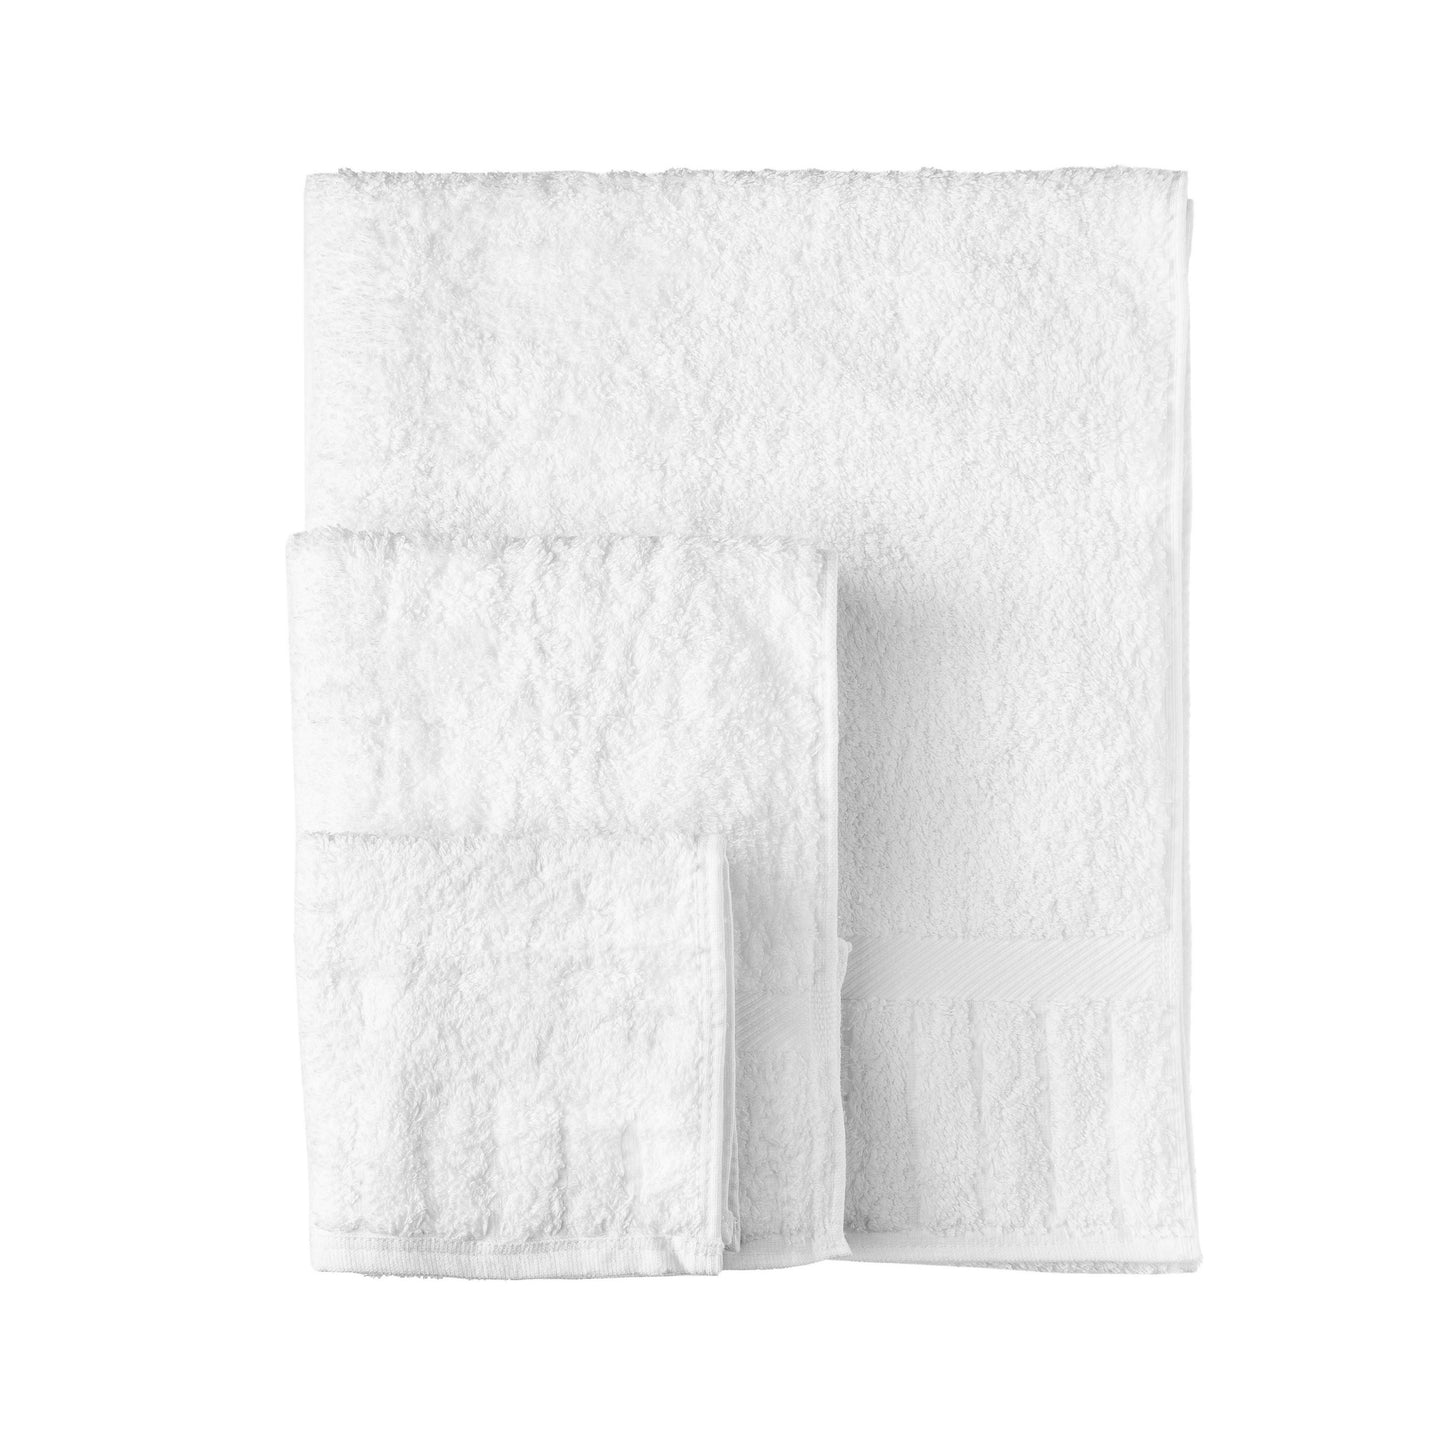 Monogrammed, New, 3 Pieces White Towels Set 100% Cotton Grandeur